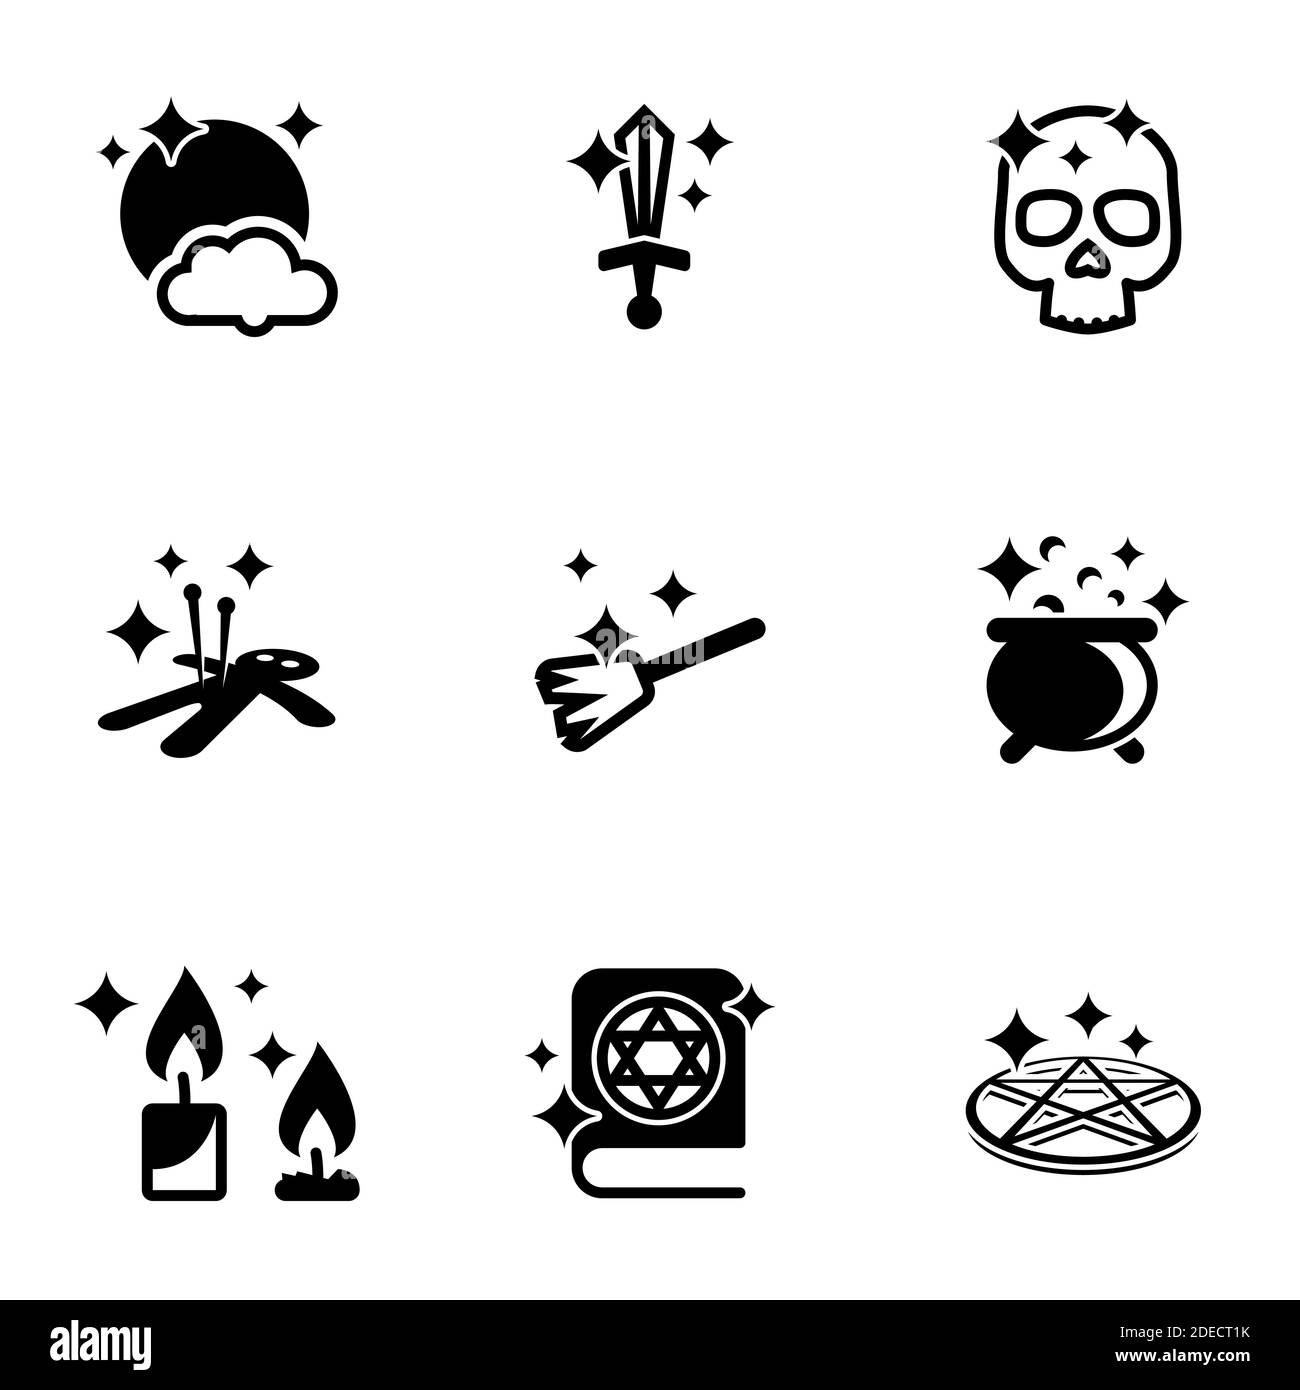 Satz von einfachen Symbolen auf einem Thema Magie, verboten, Pentagramm, Kult, Vektor, Satz. Weißer Hintergrund Stock Vektor